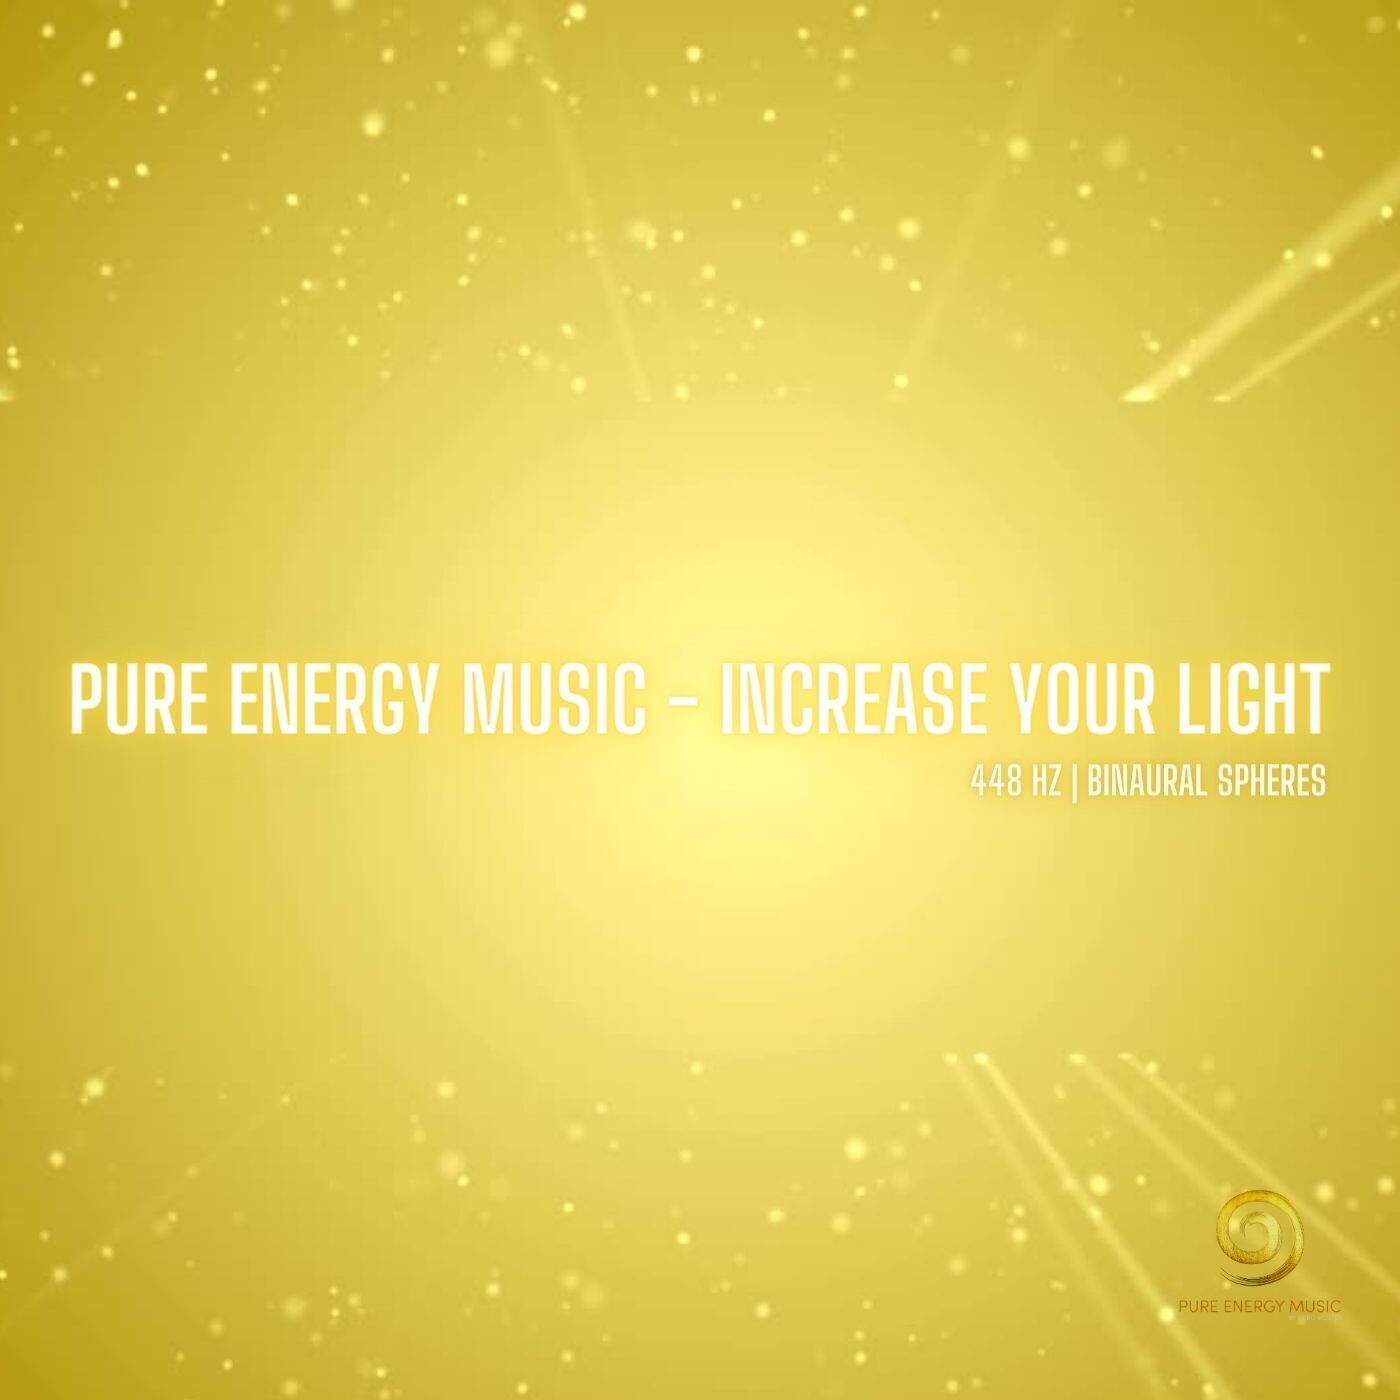 EP „Increase your Light“ MP3 | nach dem Kauf senden wir dir innerhalb 24 Stunden deinen persönlichen Download Link zu.